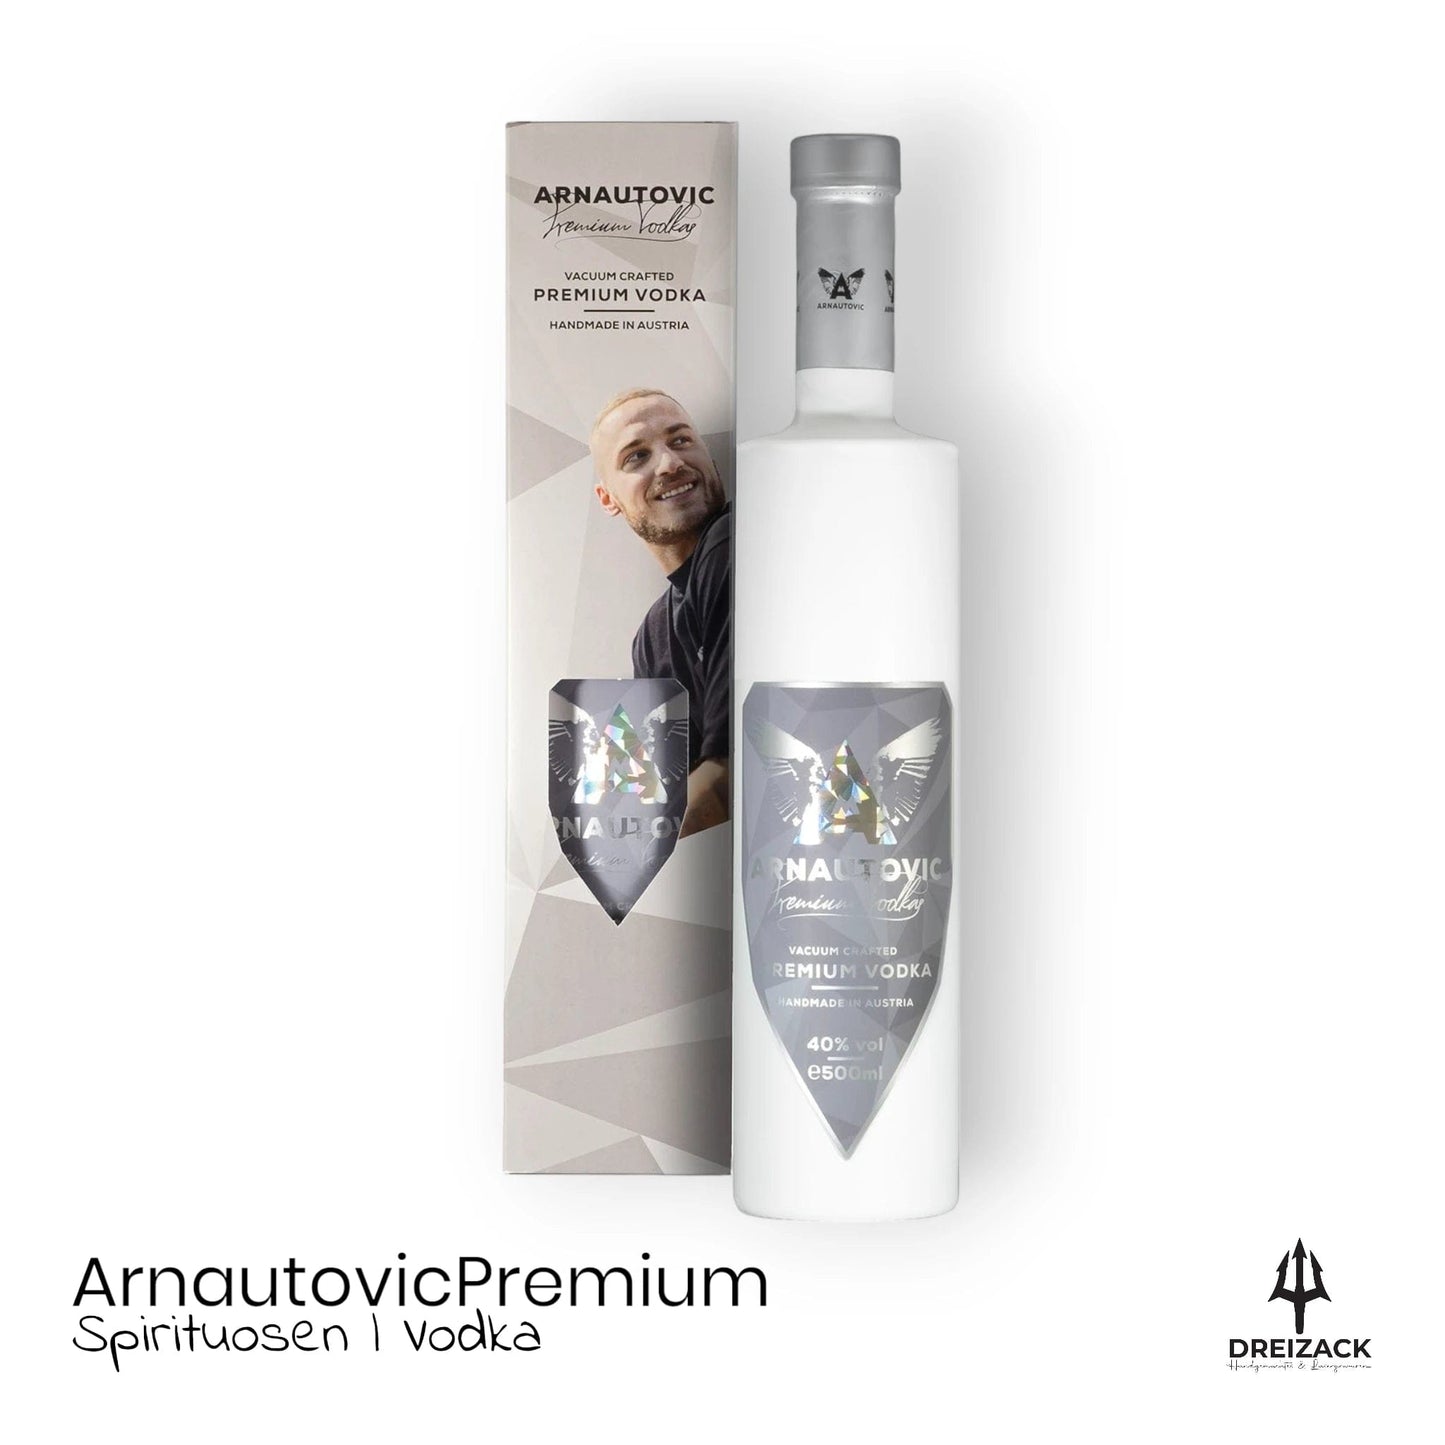 Arnautovic Premium Vodka – Vakuumdestillier Vodka aus AT Alkoholische Getränke Dreizack oesterreich handgemachte geschenke in wien